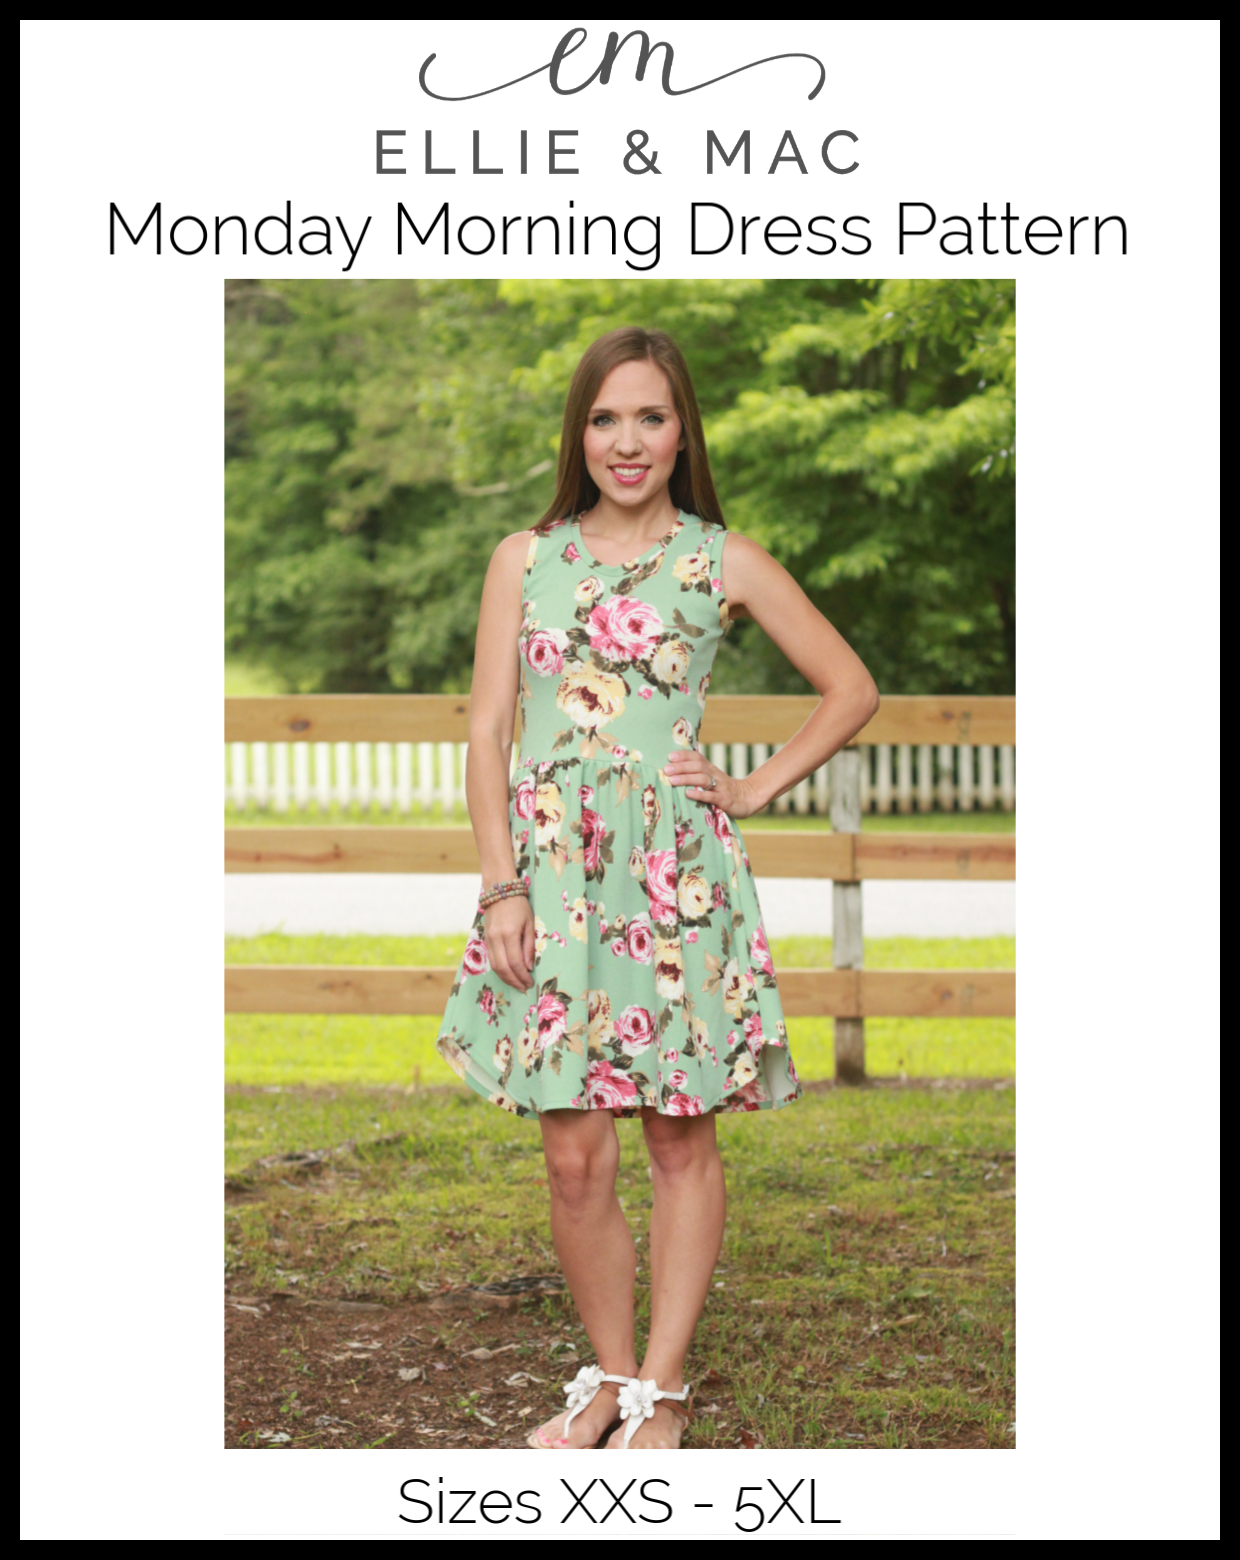 Monday Morning Dress Pattern